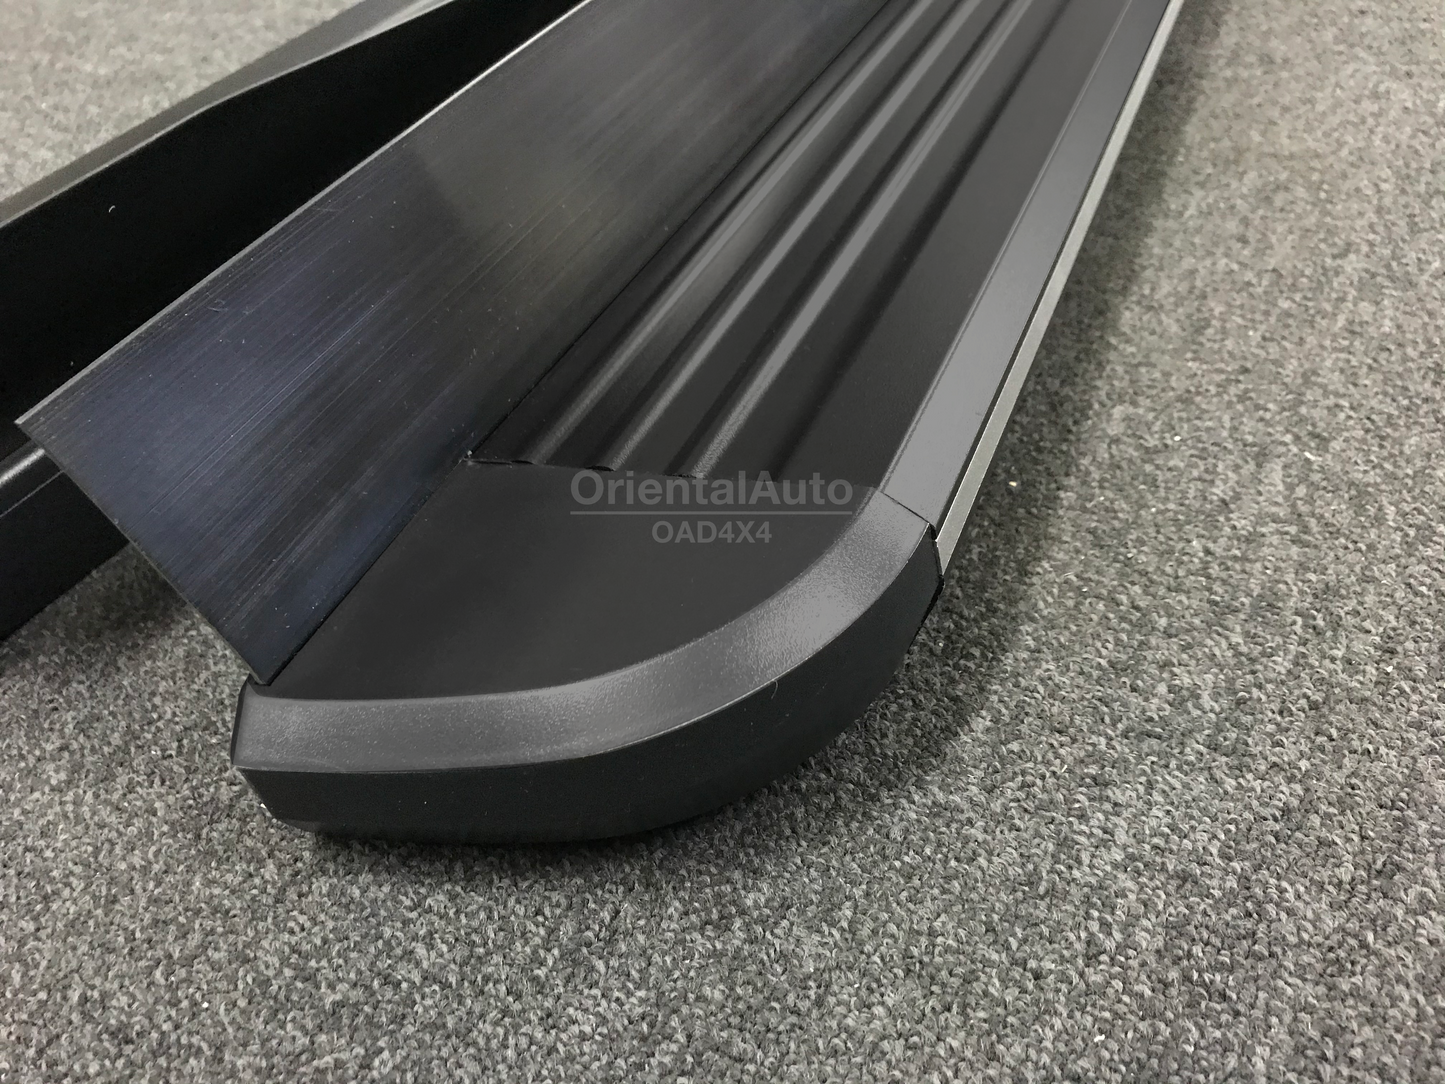 Black Aluminum Side Steps Running Board For Holden Equinox 2017+ #LP